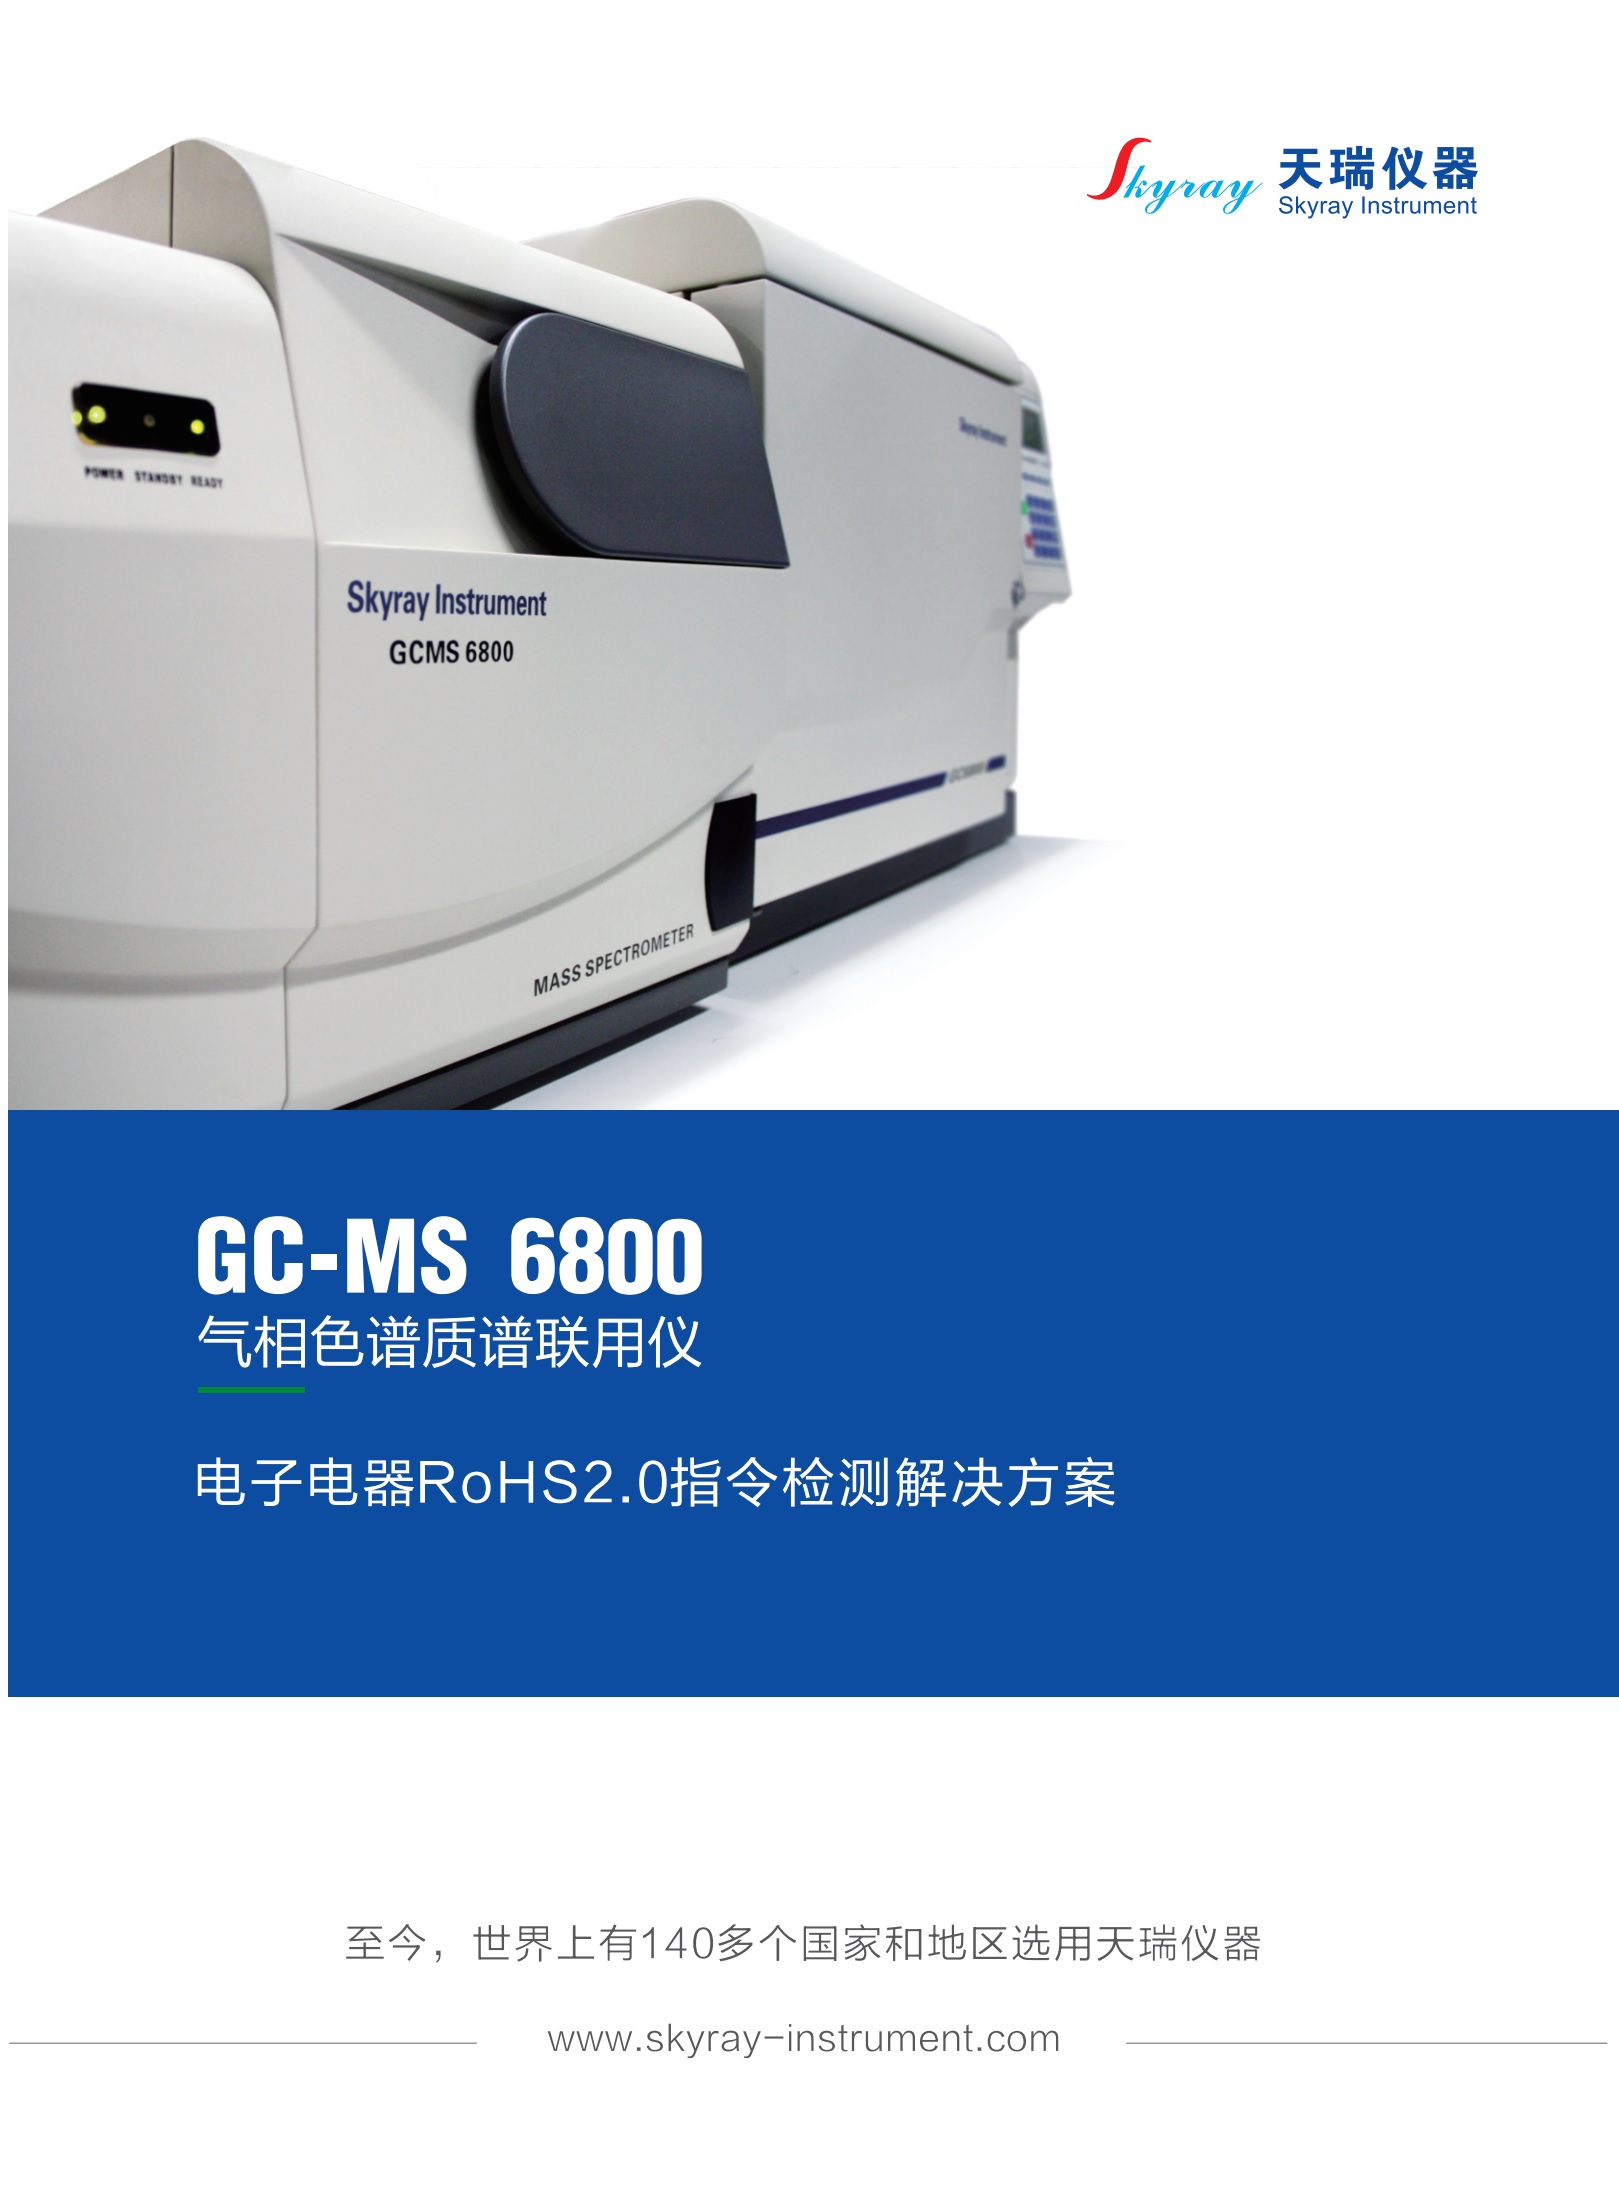 江苏天瑞仪器股份有限公司-RoHS2.0检测解决方案（GC-MS 6800 气相色谱-质谱联用仪)